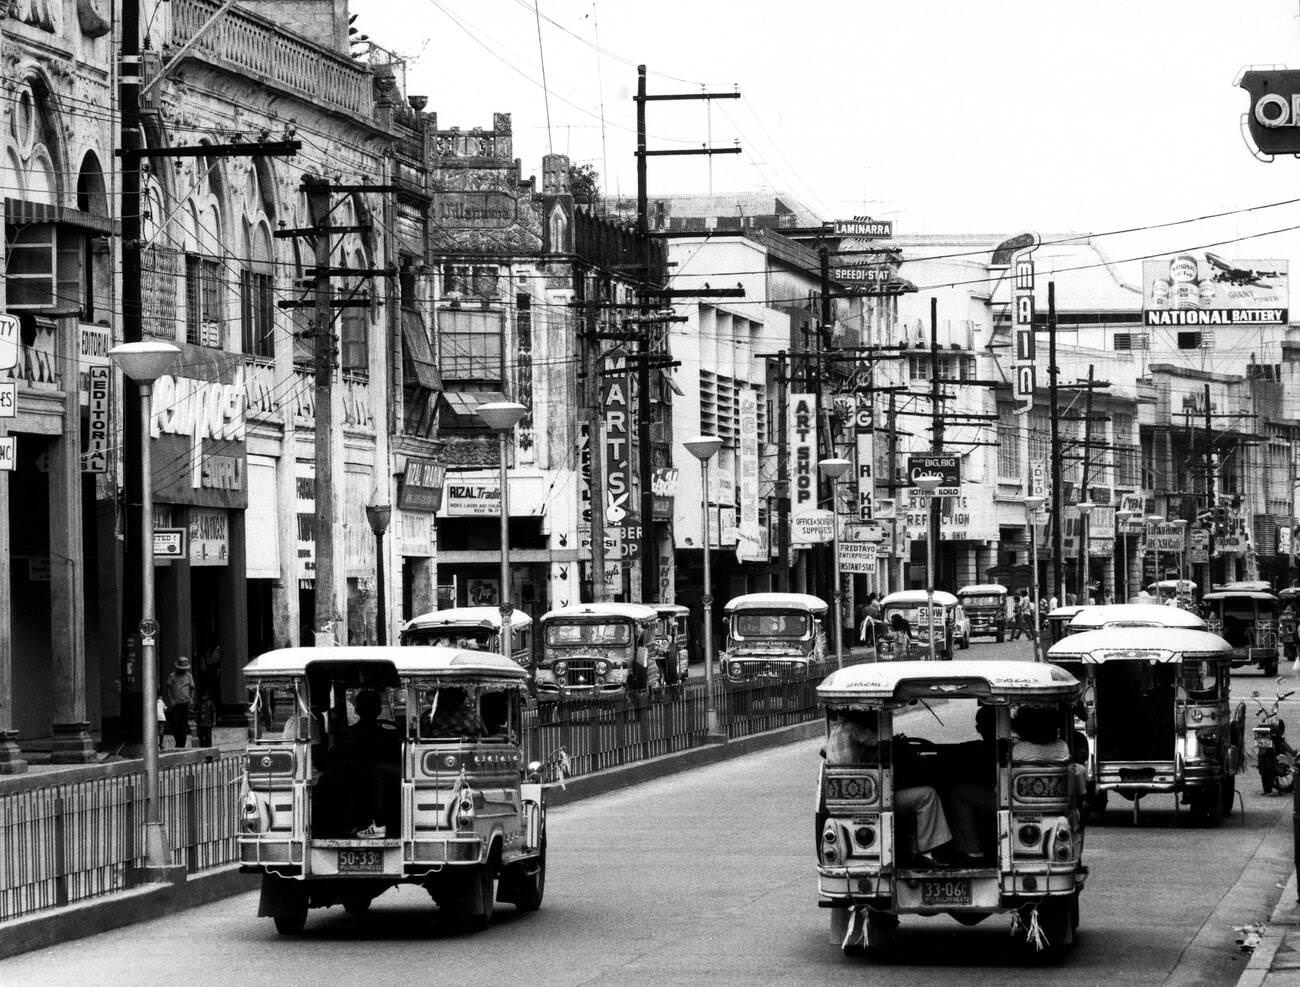 Iloilo City on Panay Island, Philippines, featuring Iznart Street, 1972.